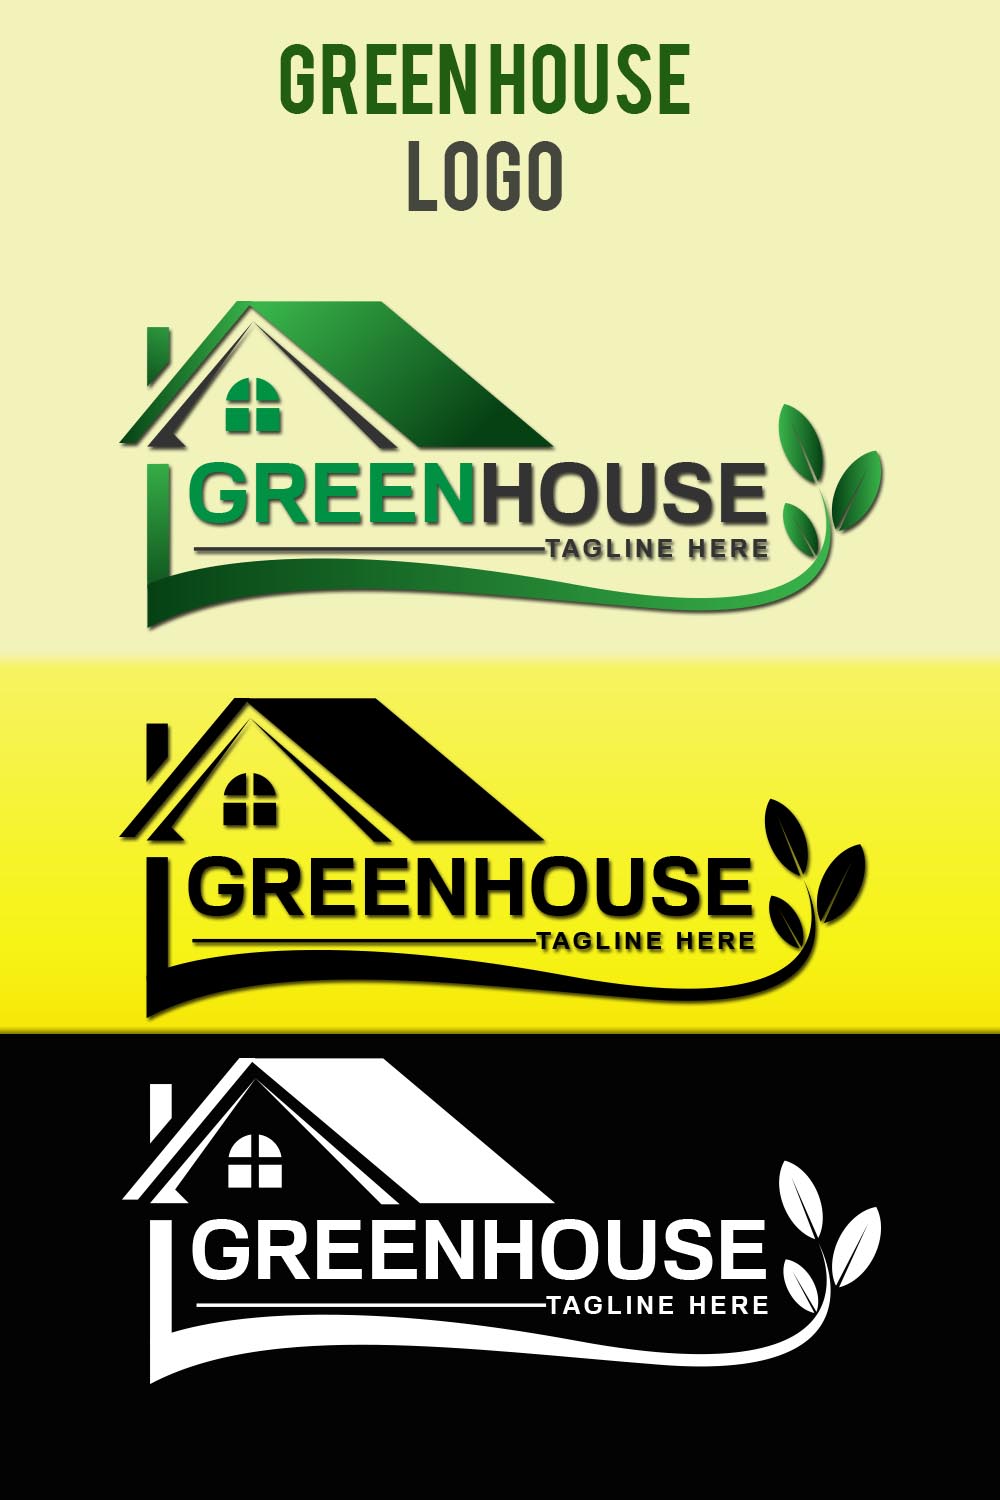 Green House Logo pinterest image.